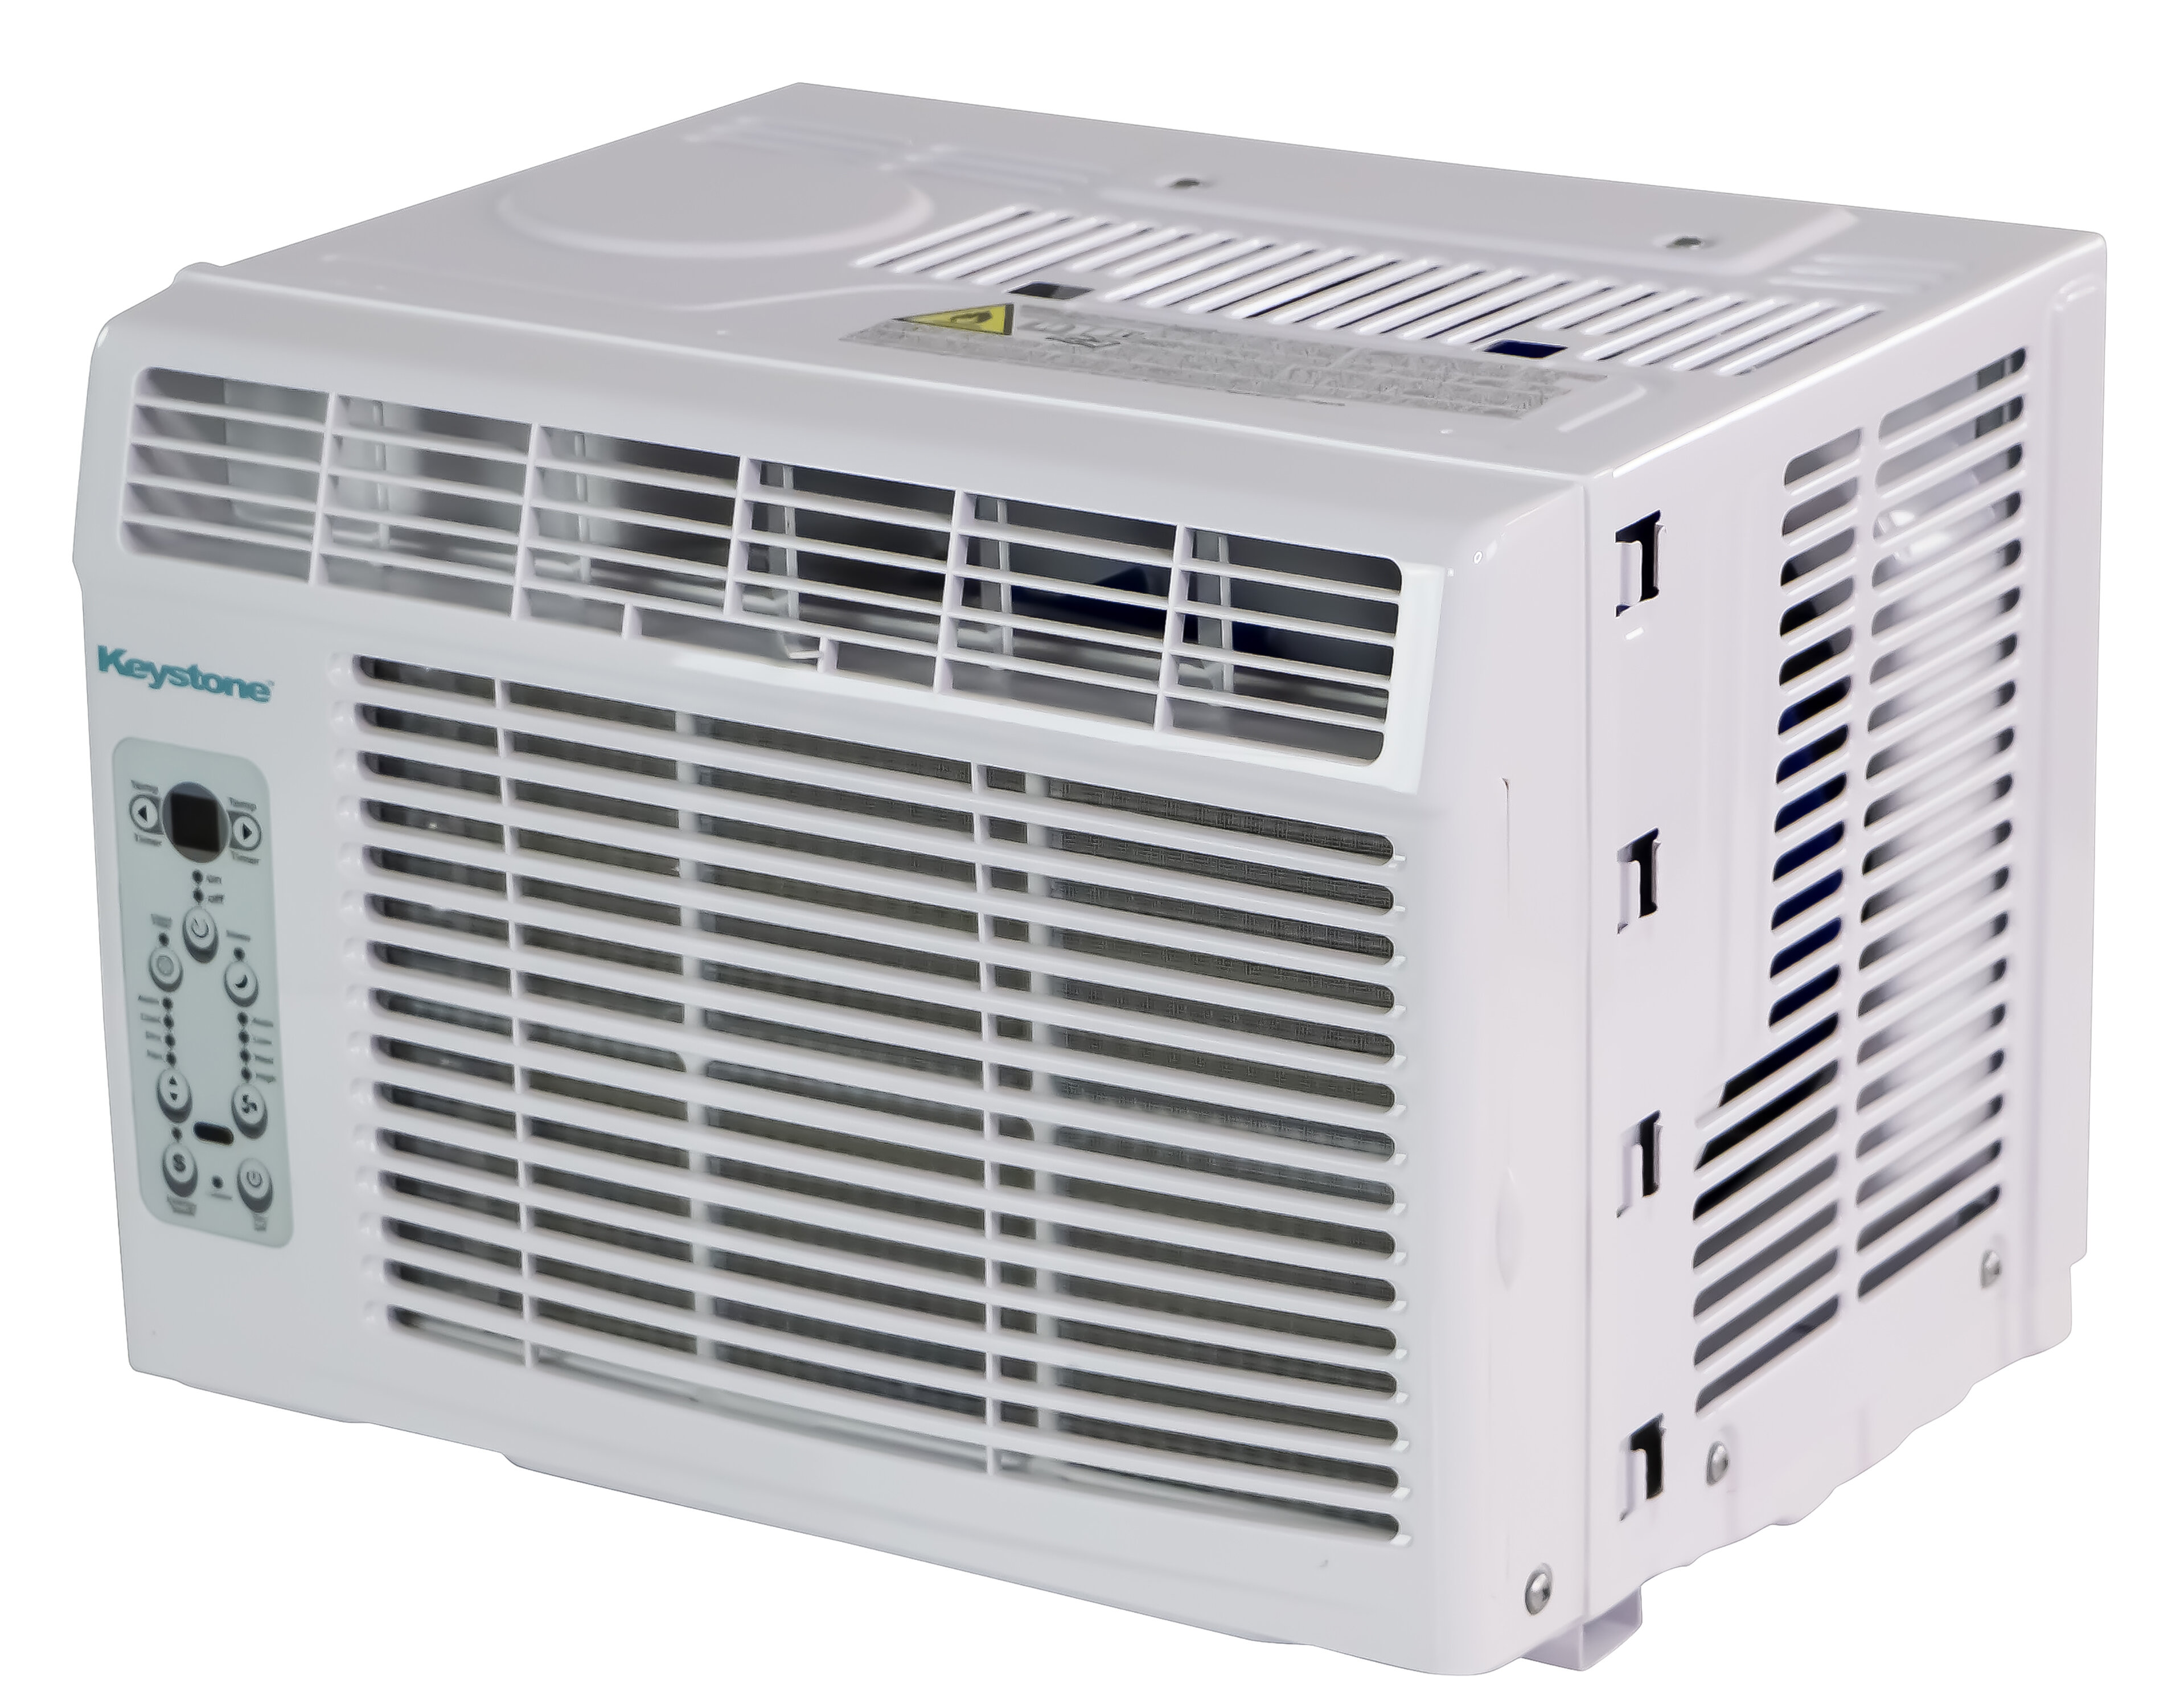 Black & Decker 14,500 BTU Window Air Conditioner with Remote